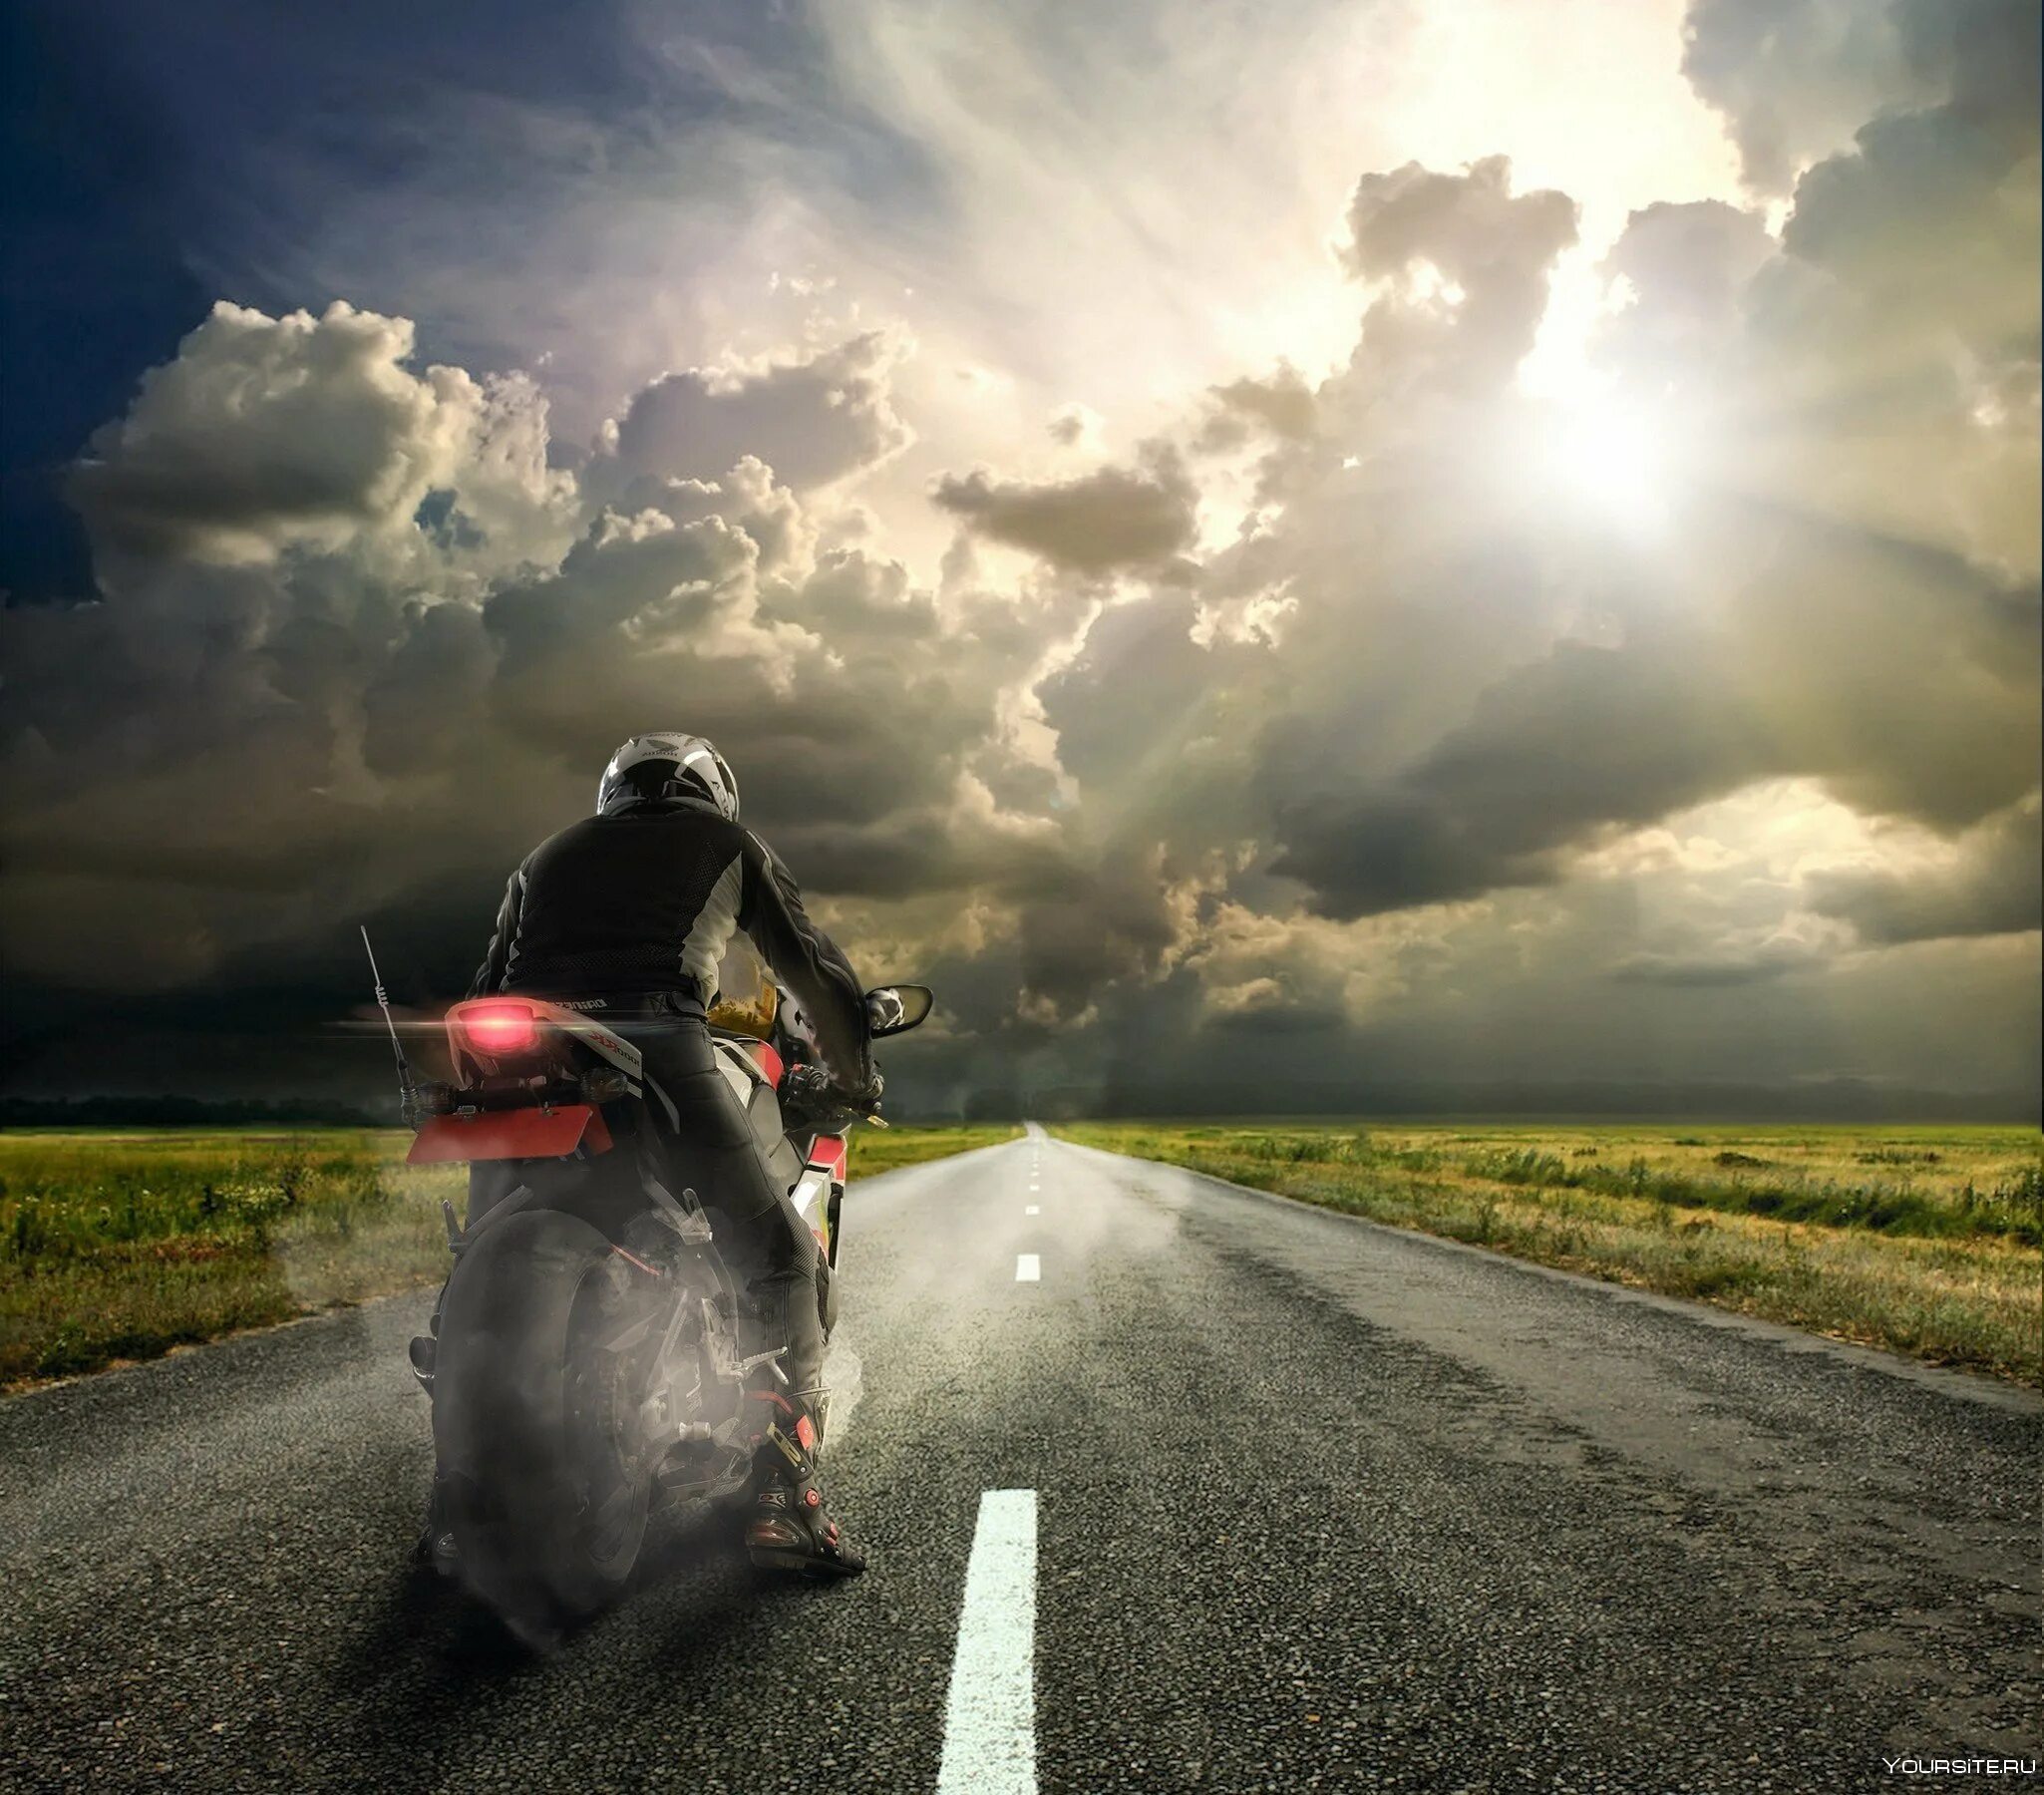 Легкая пыль несется по дороге далеко. Мотоцикл на дороге. Байкер на дороге. Пейзаж с мотоциклом. Мотоциклист на дороге.